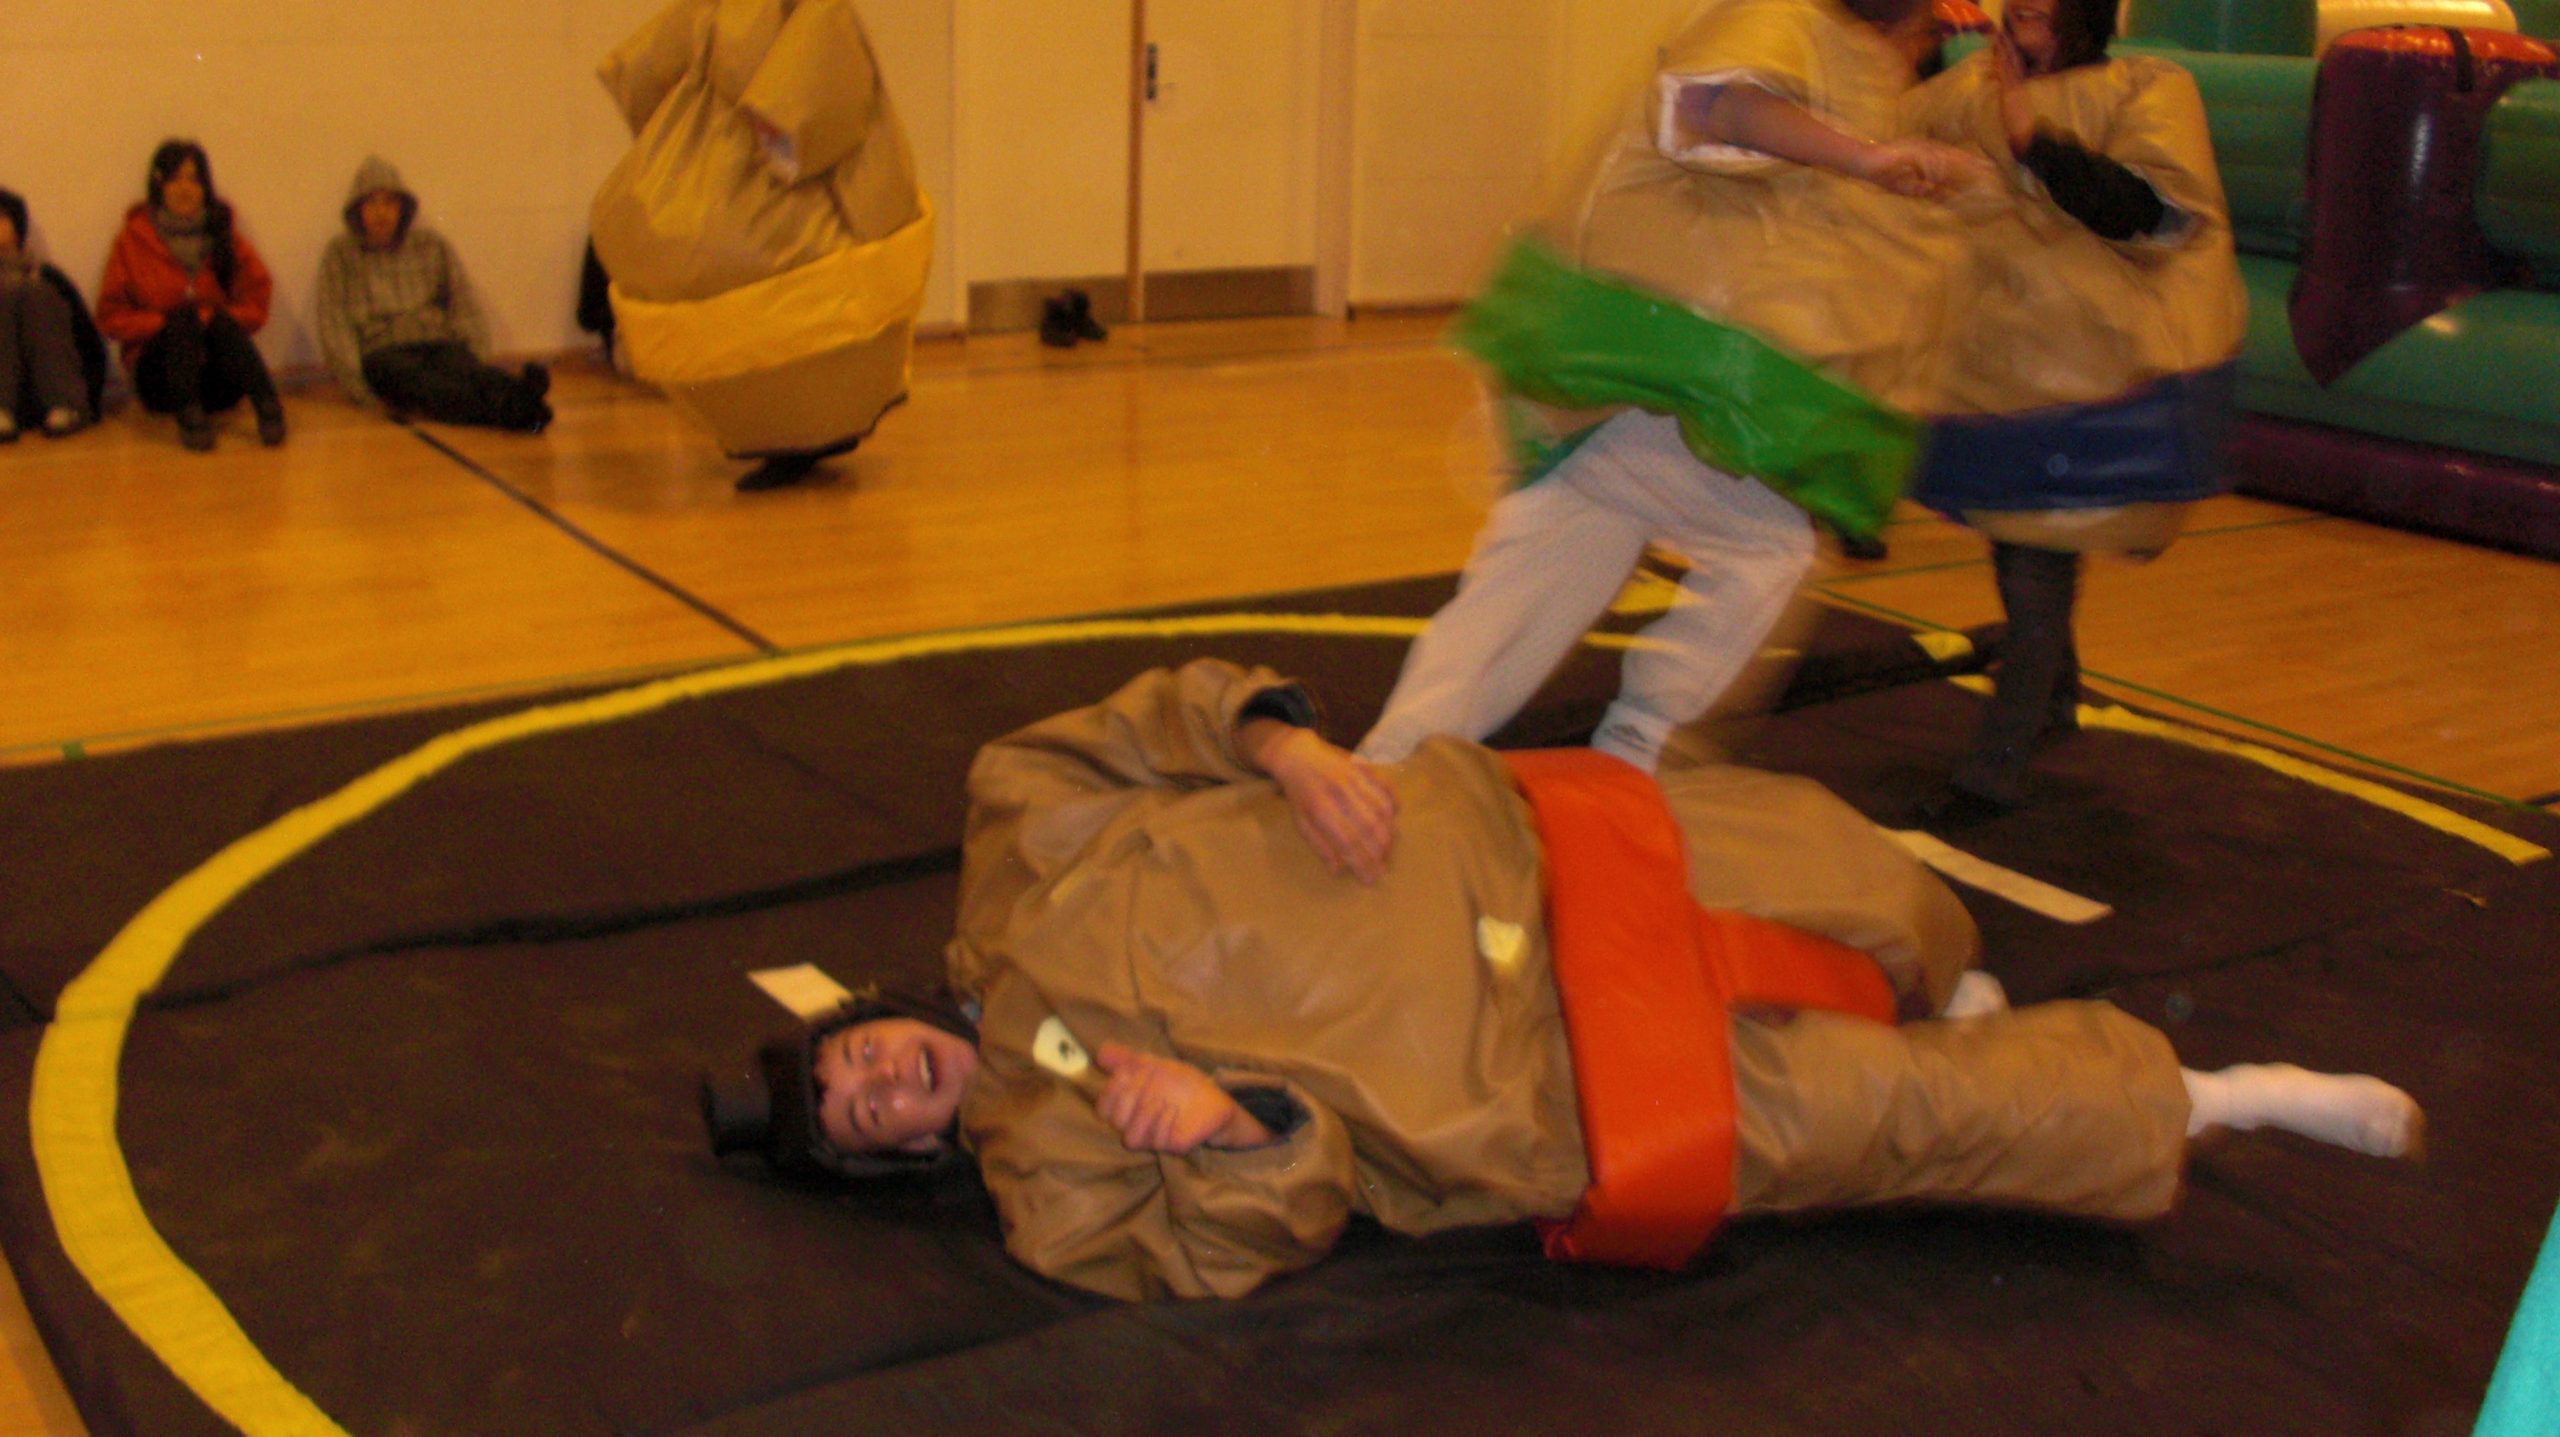 Her ses sumodragter udlejning med to personer der slåsser. De er begge iført en sumodragt og har et hhv. rødt og grønt billede på.